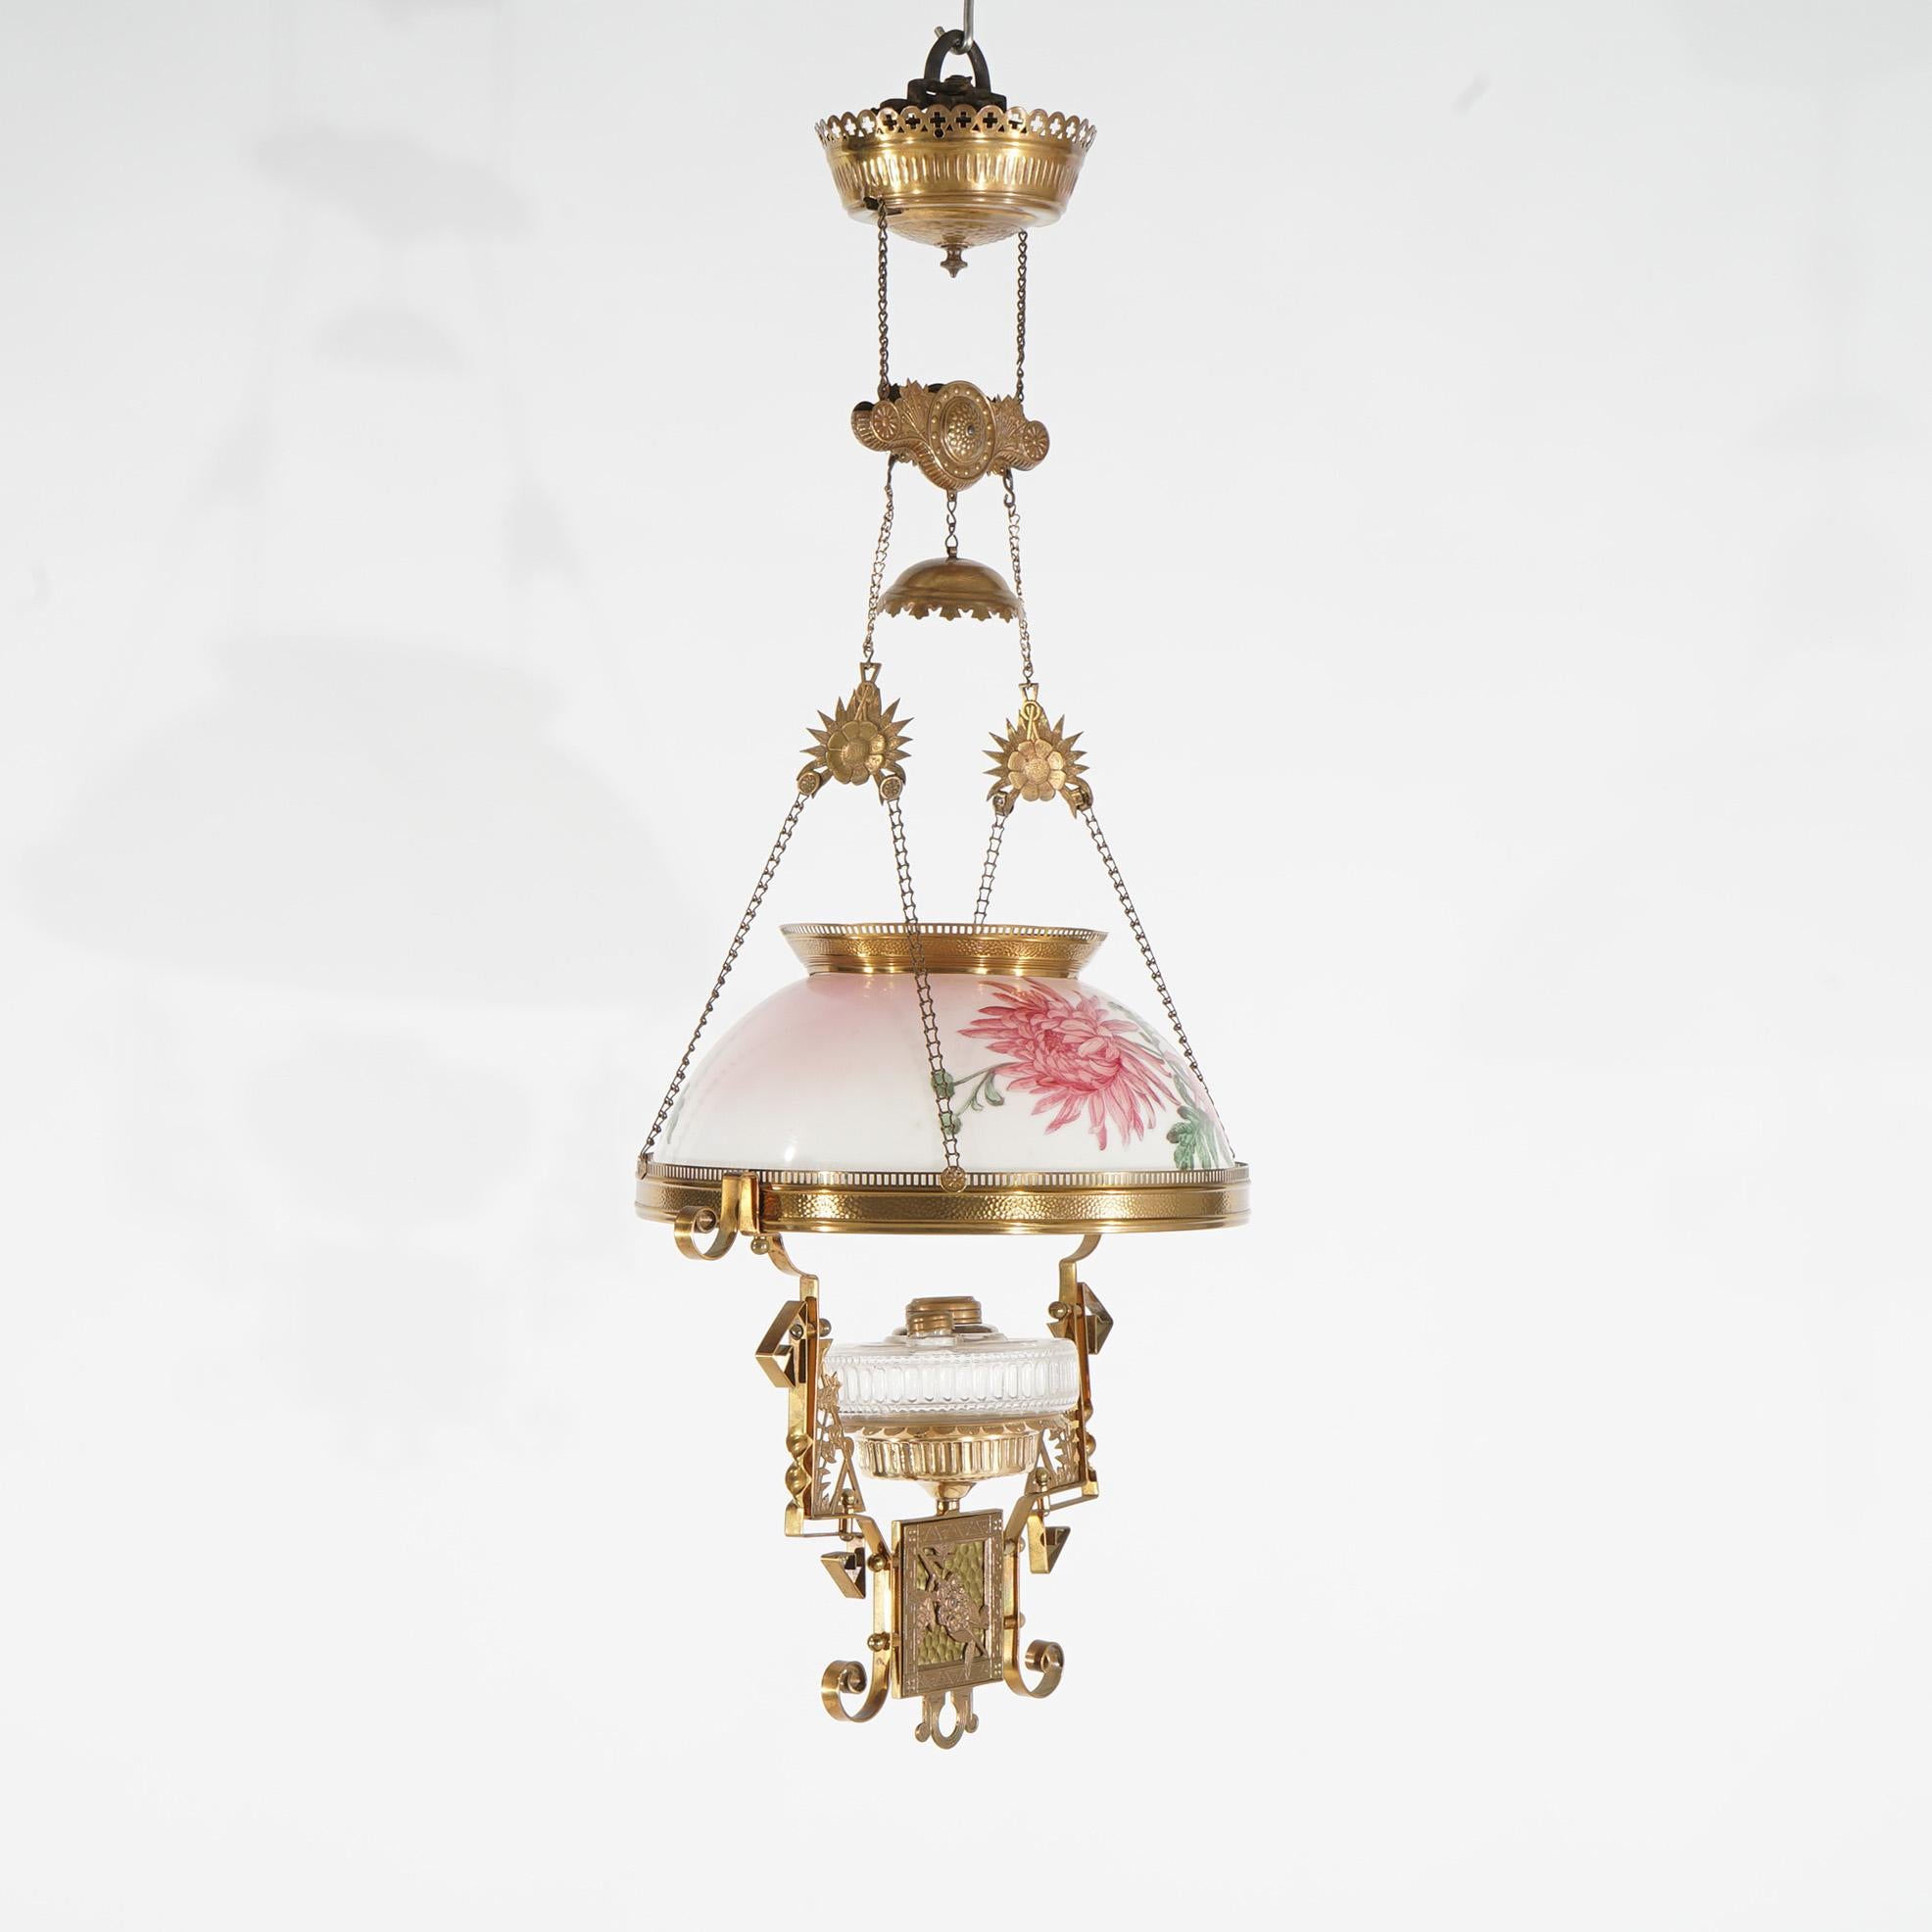 Eine antike Aesthetic Movement Hängelampe Kerosin bietet Messing Schnecke Form Rahmen mit floralen Hand gemalt Glas Schatten & font c1890

Maße - 39 